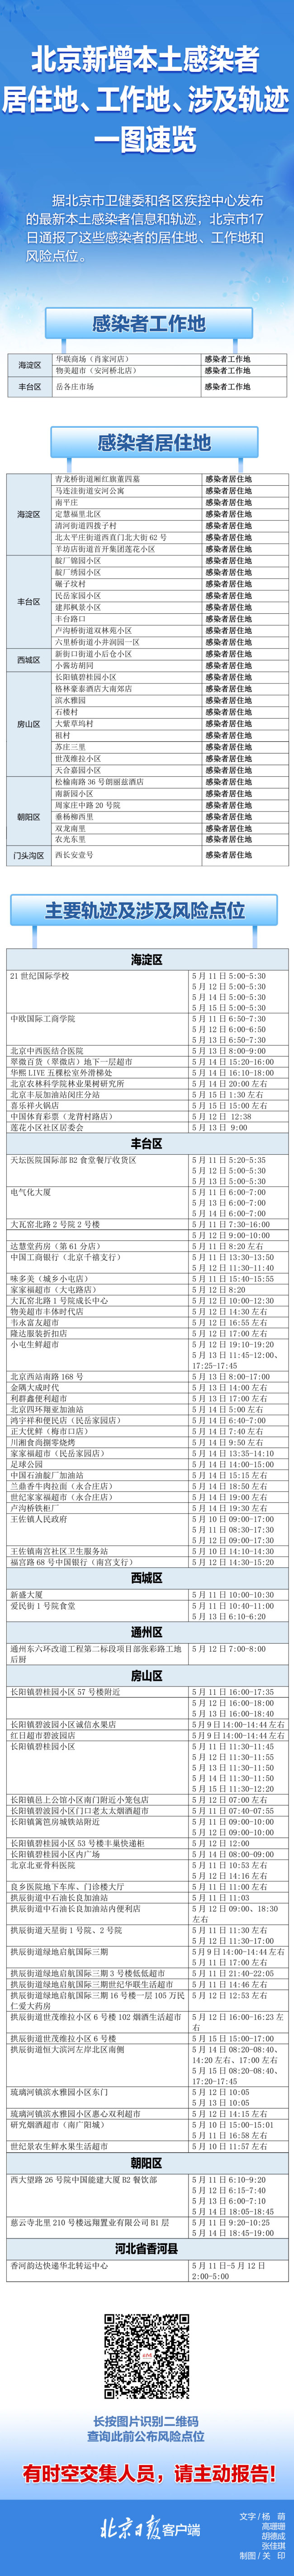 北京新增本土感染者涉及这些风险点位，一图速览